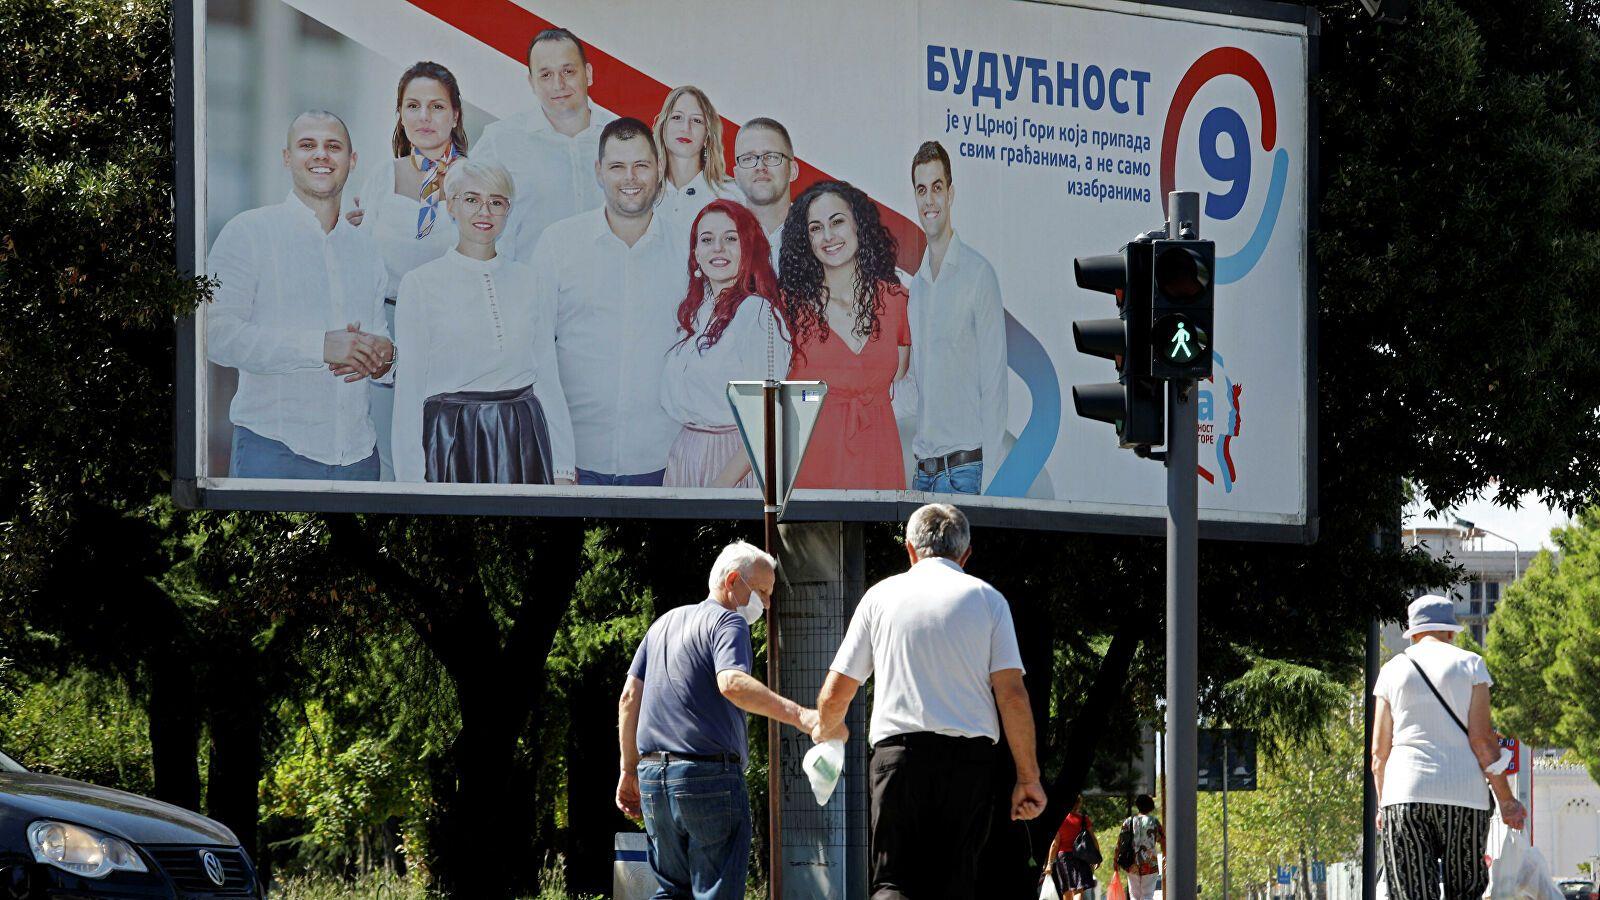 Черногорская оппозиция может поднять вопрос о сближении с ЕАЭС – эксперт